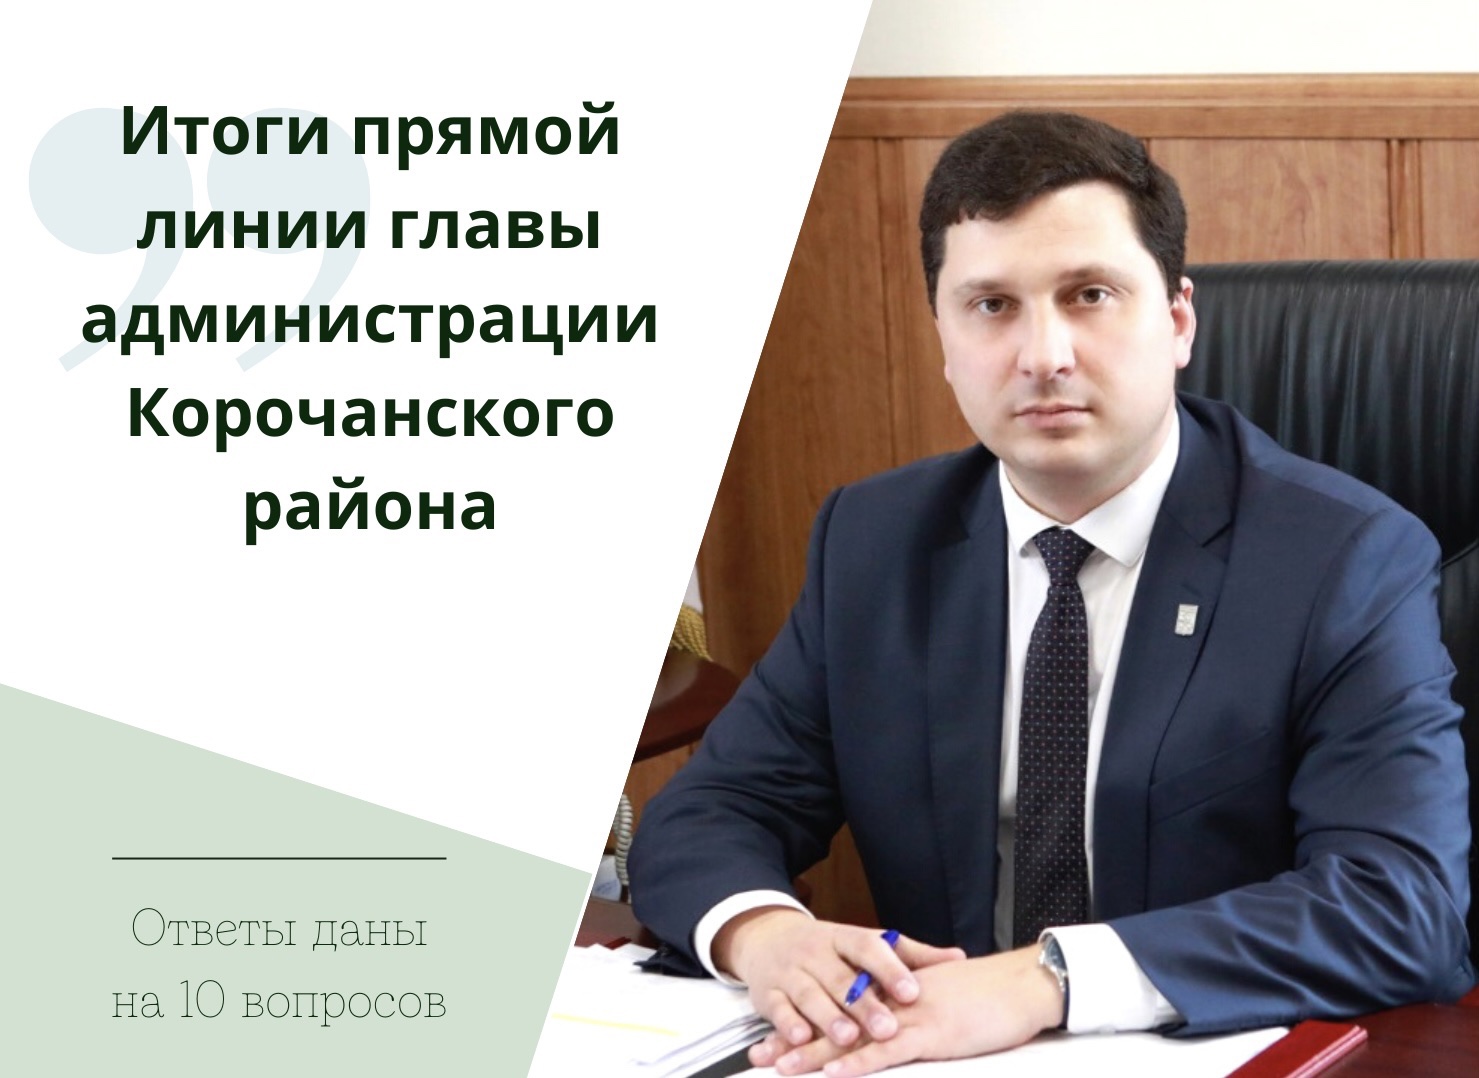 В ходе прямой линии глава администрации района Николай Васильевич Нестеров ответил на 10 вопросов